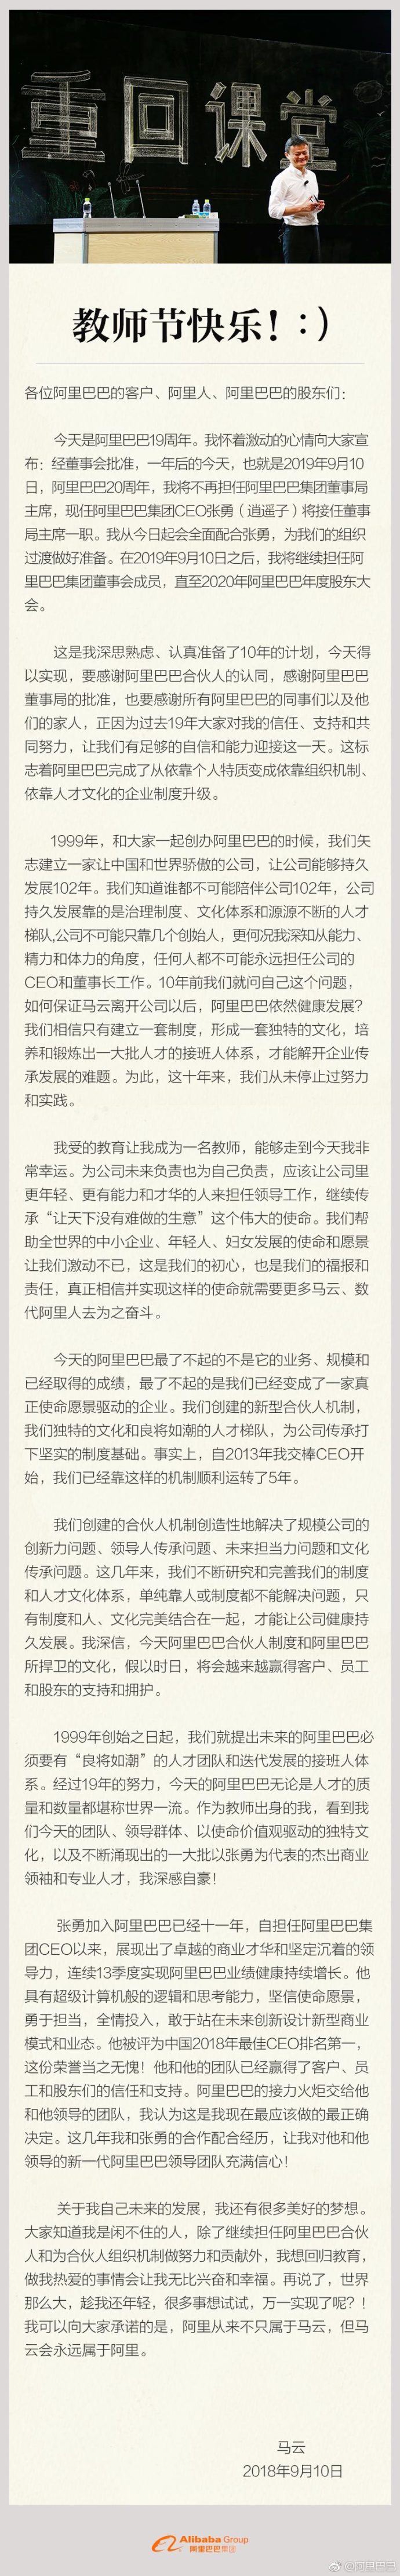 马云传承计划落实 明年不再在担任董事局主席，张勇接任